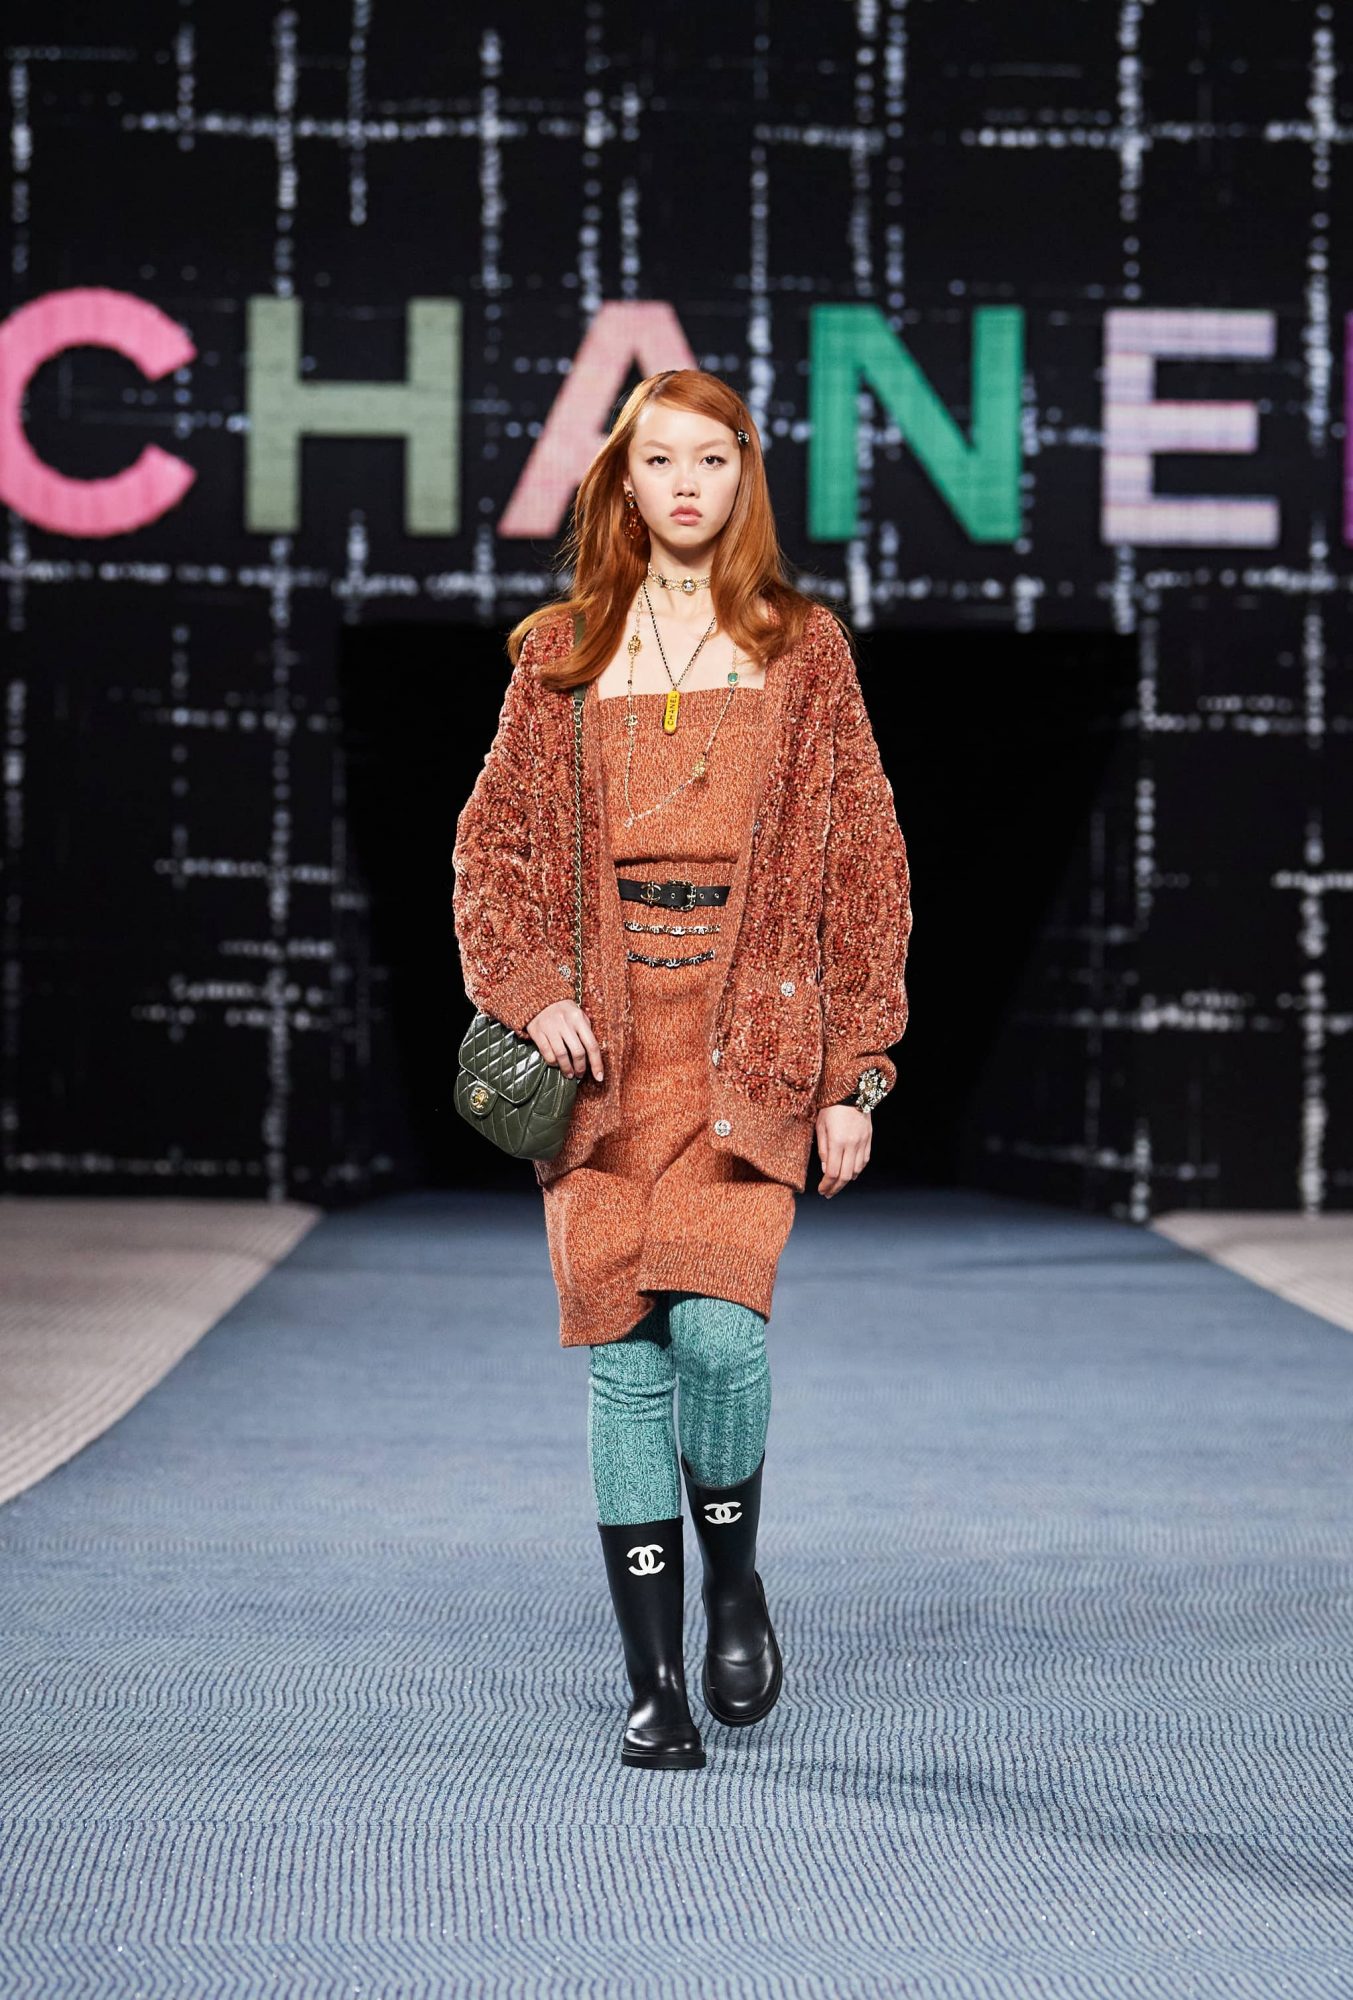 Chanel Womenswear Fall/Winter 2022/2023 Show